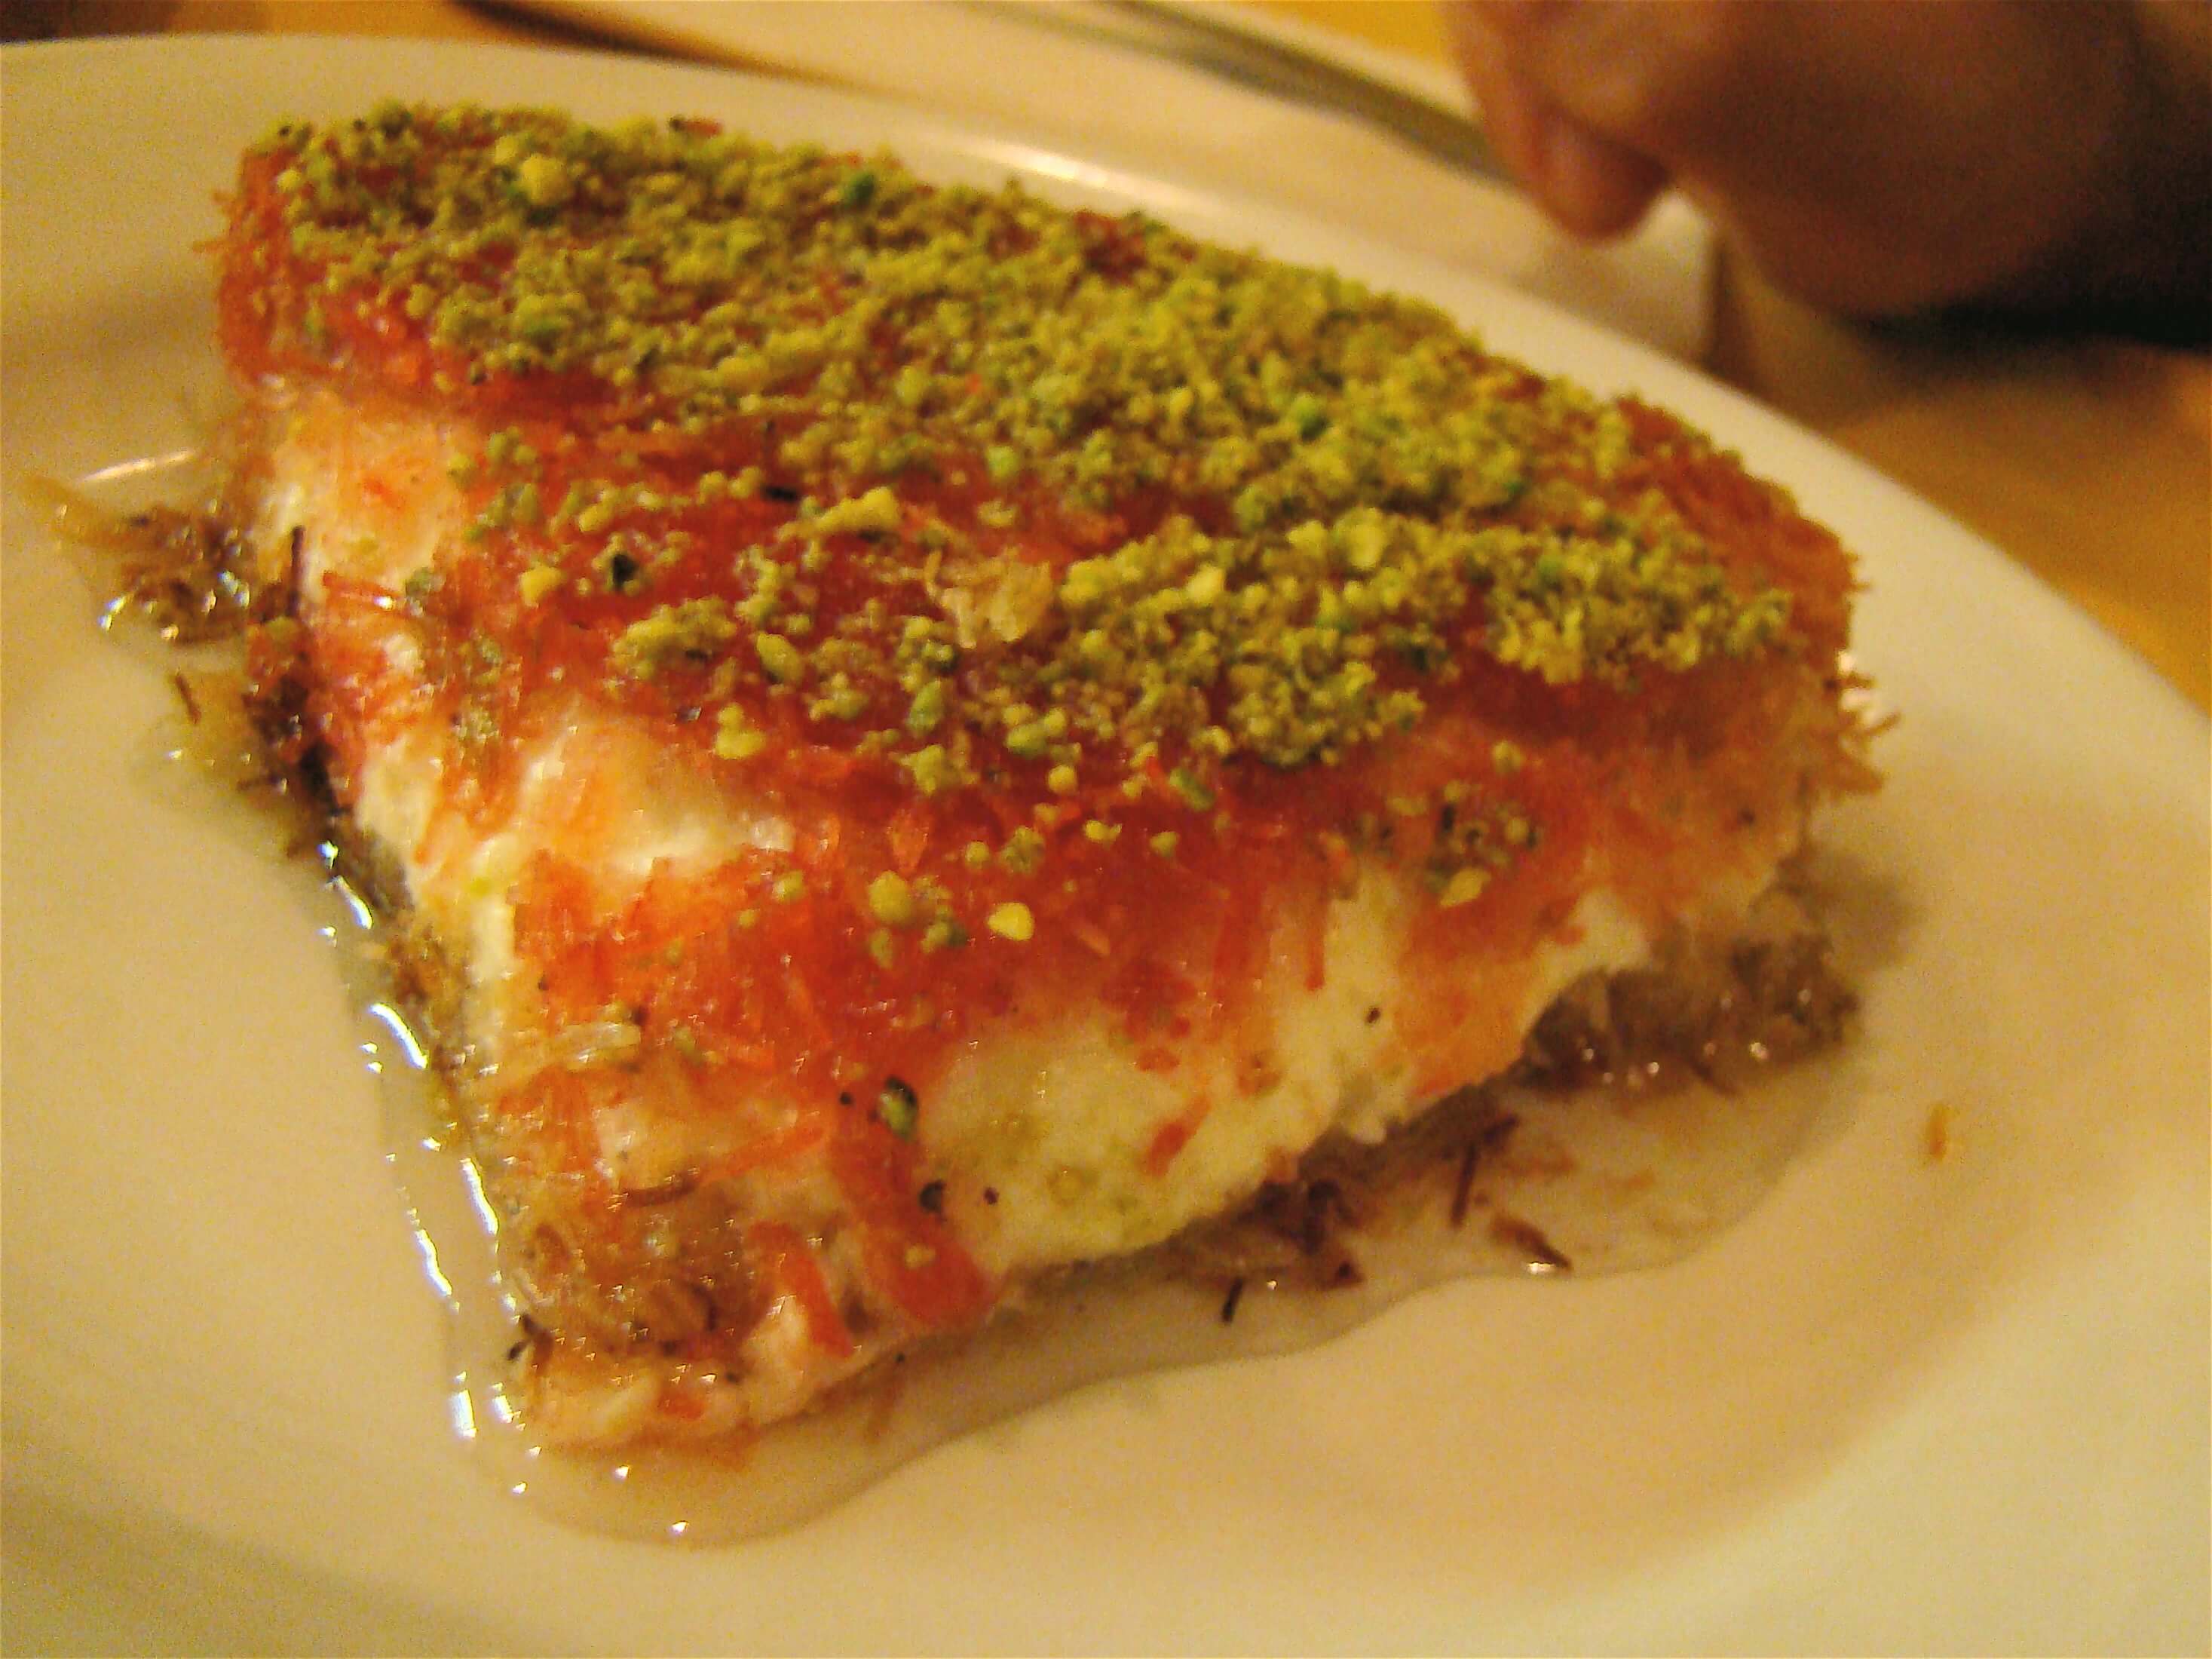 Dolci per favore, una rapida occhiata ai dessert arabi 